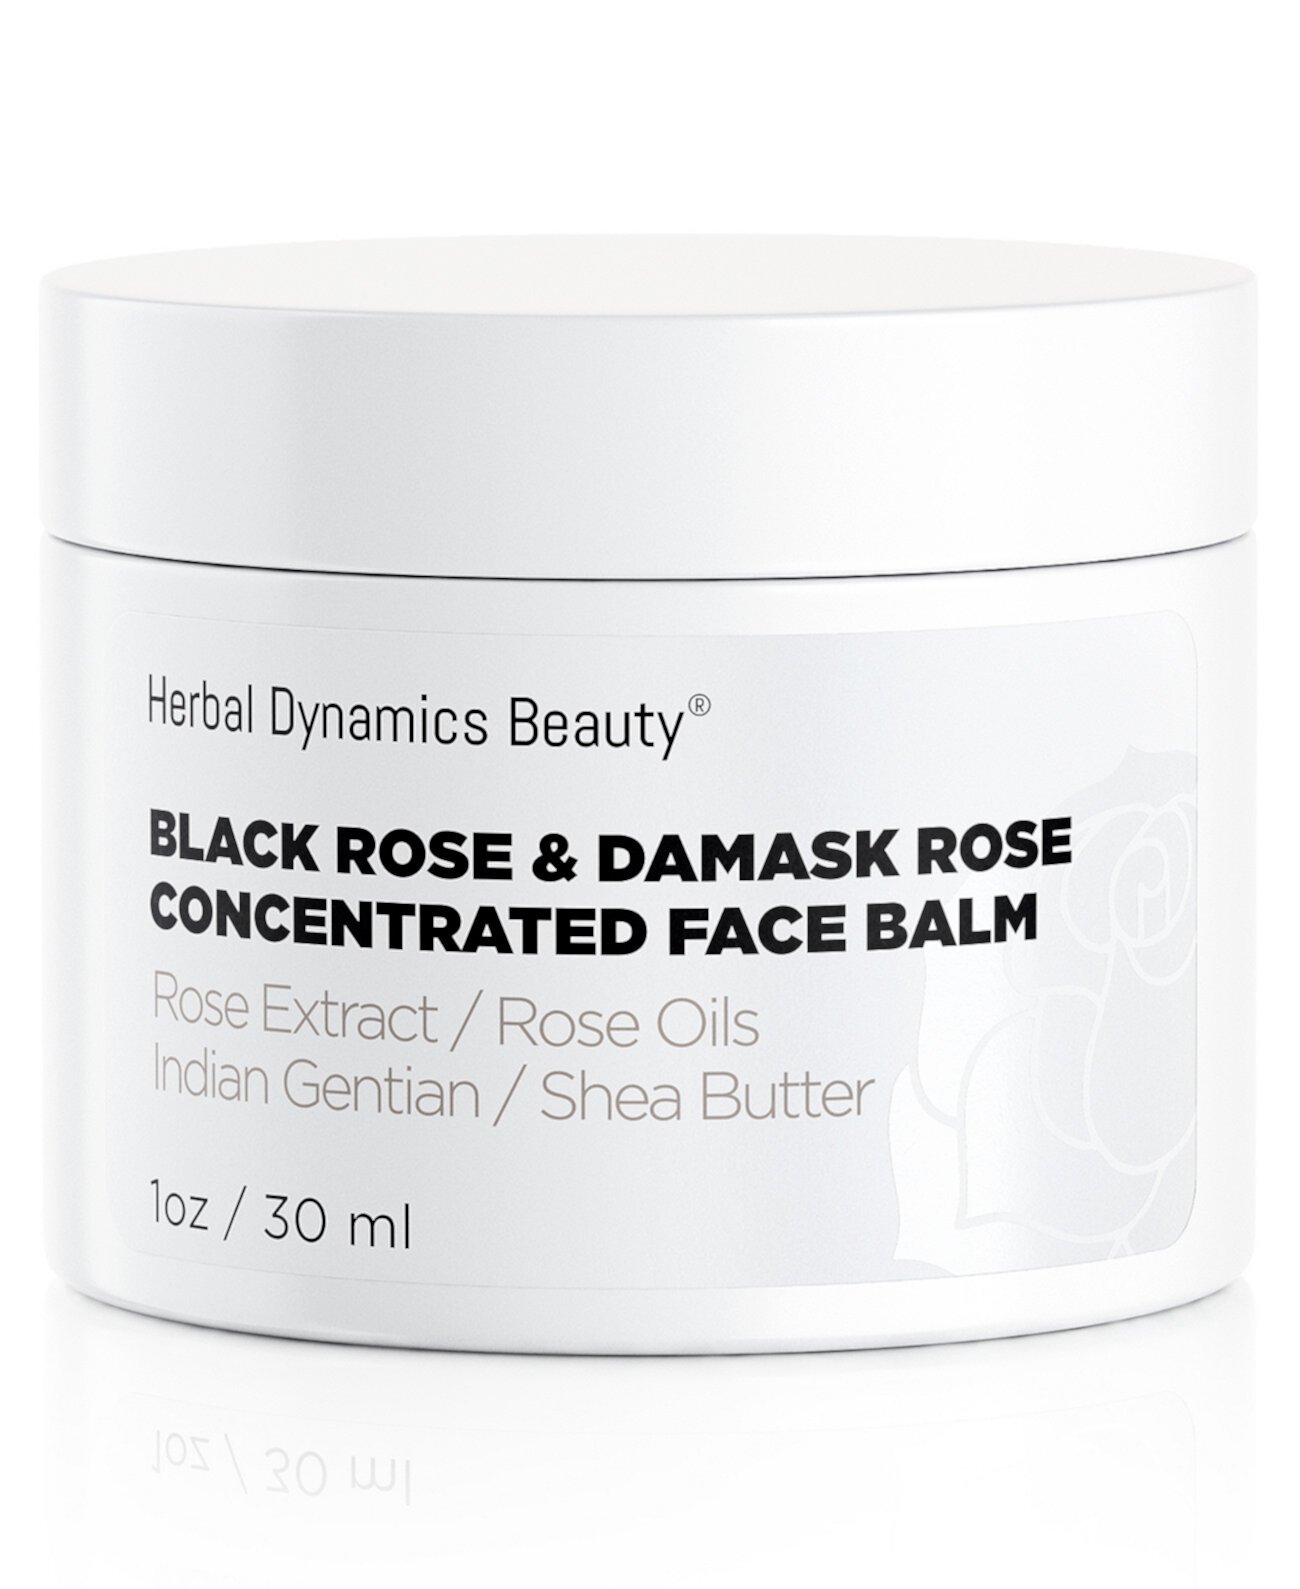 Концентрированный бальзам для лица Black Rose и Damask Rose Herbal Dynamics Beauty